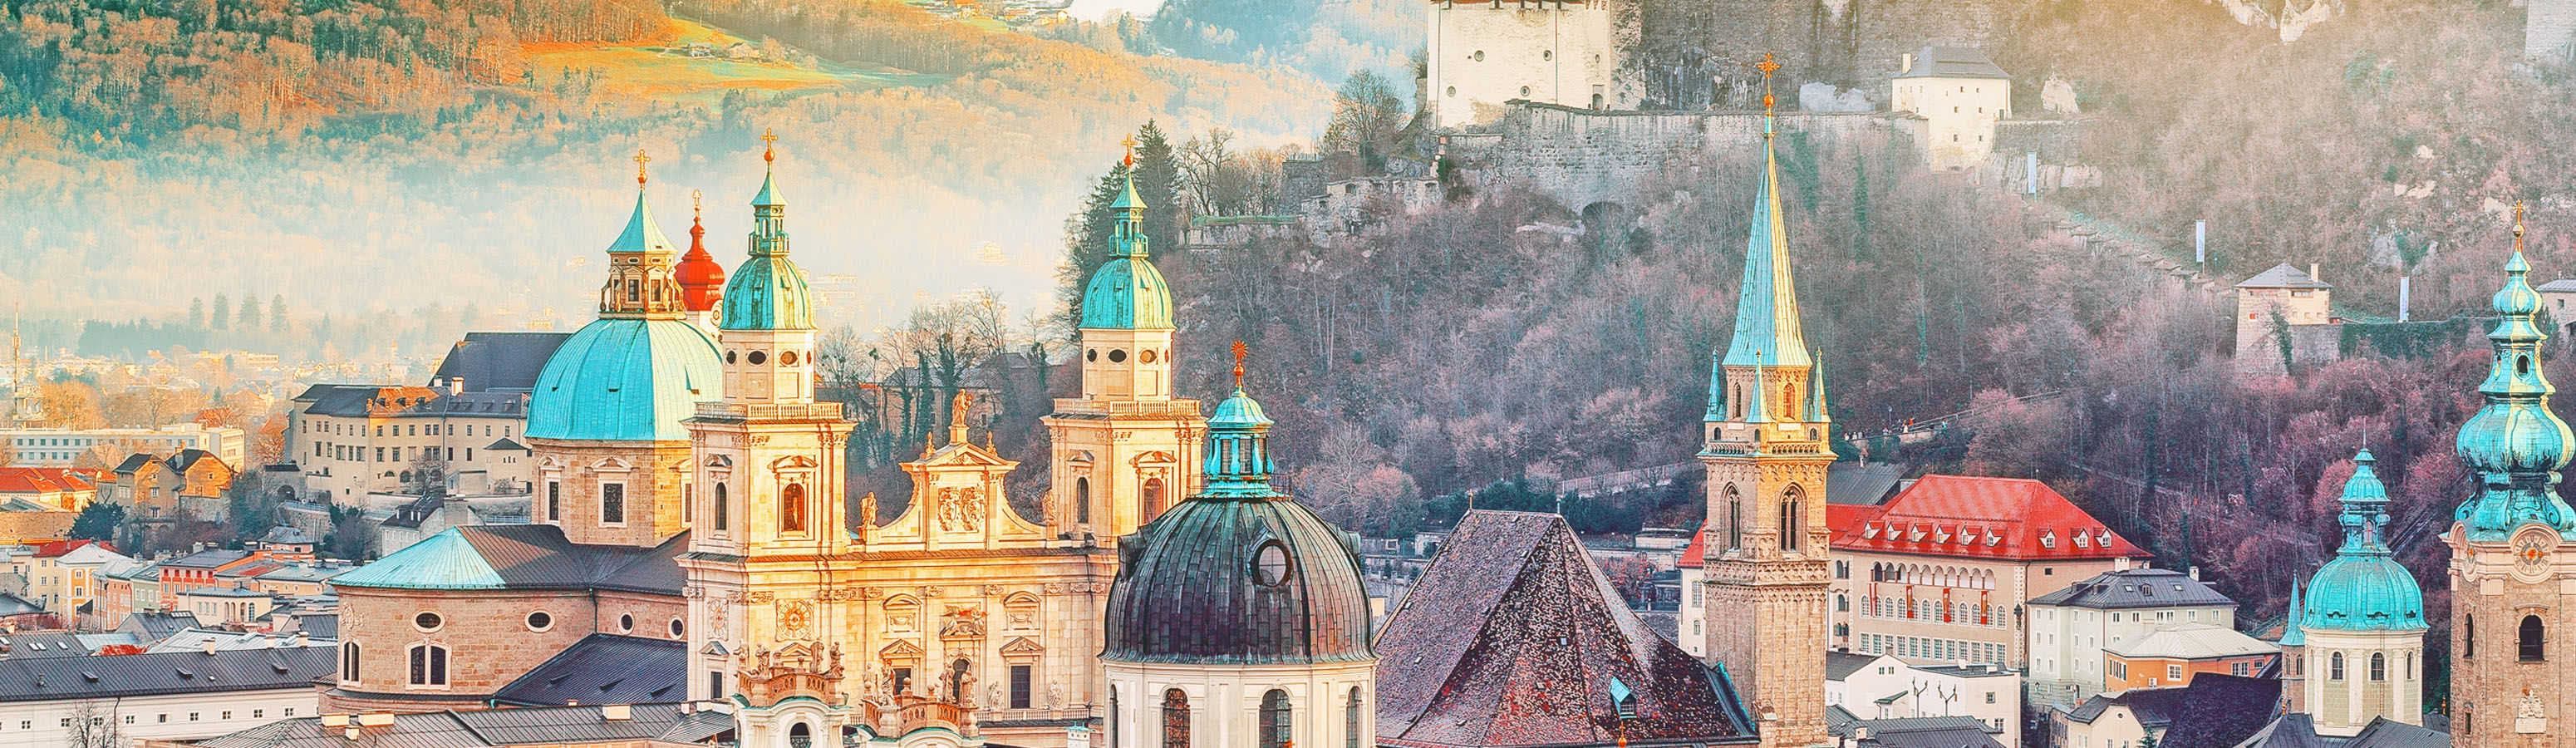 Австрия привлекает добра и достопримечательностей